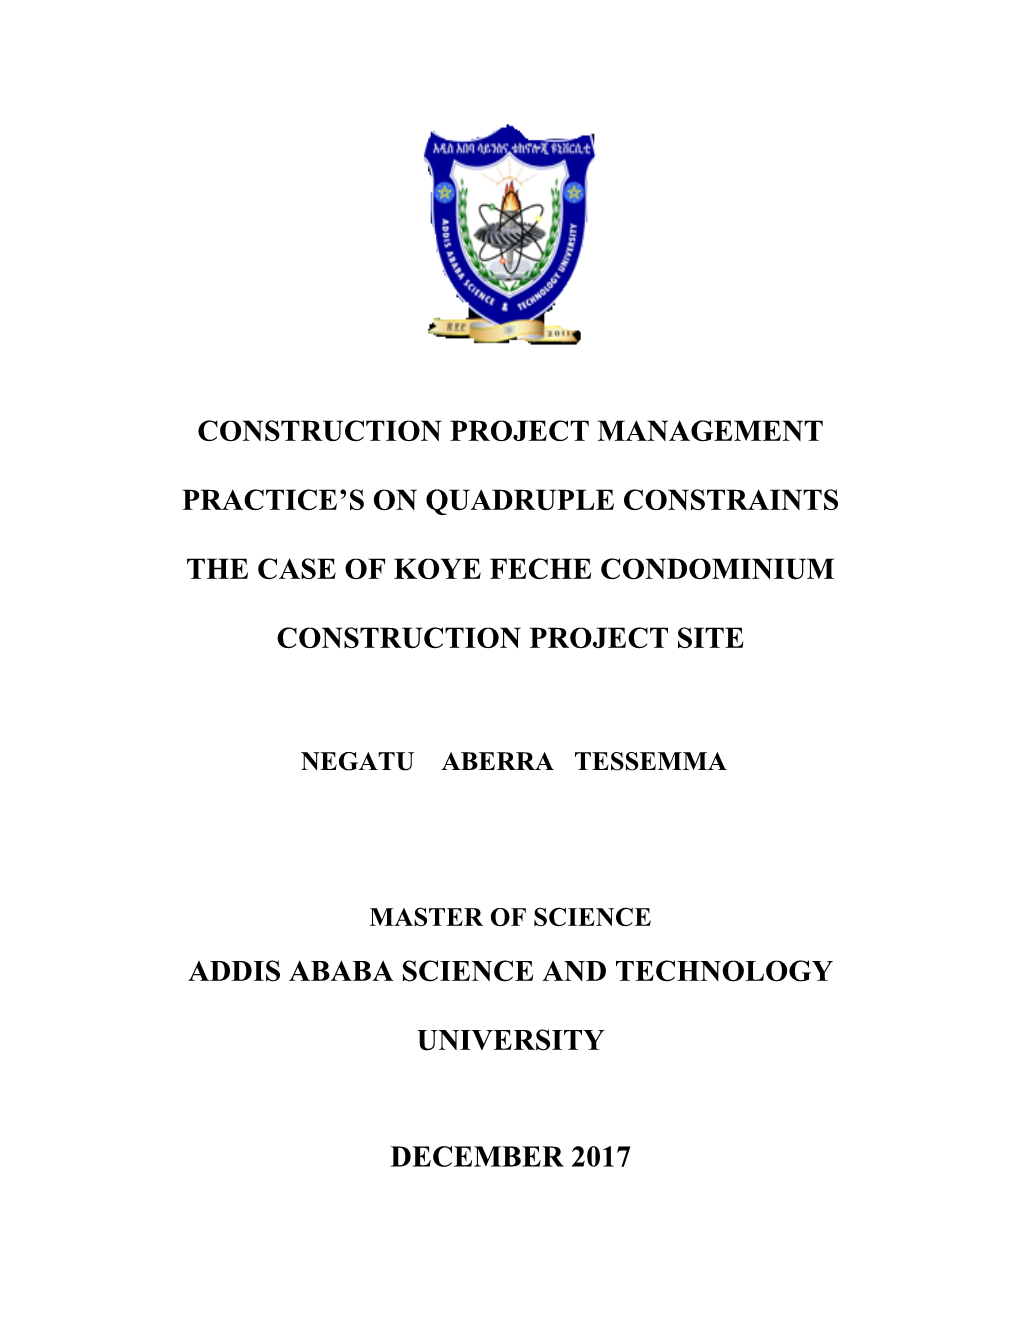 Construction Project Management Practice's on Quadruple Constraints